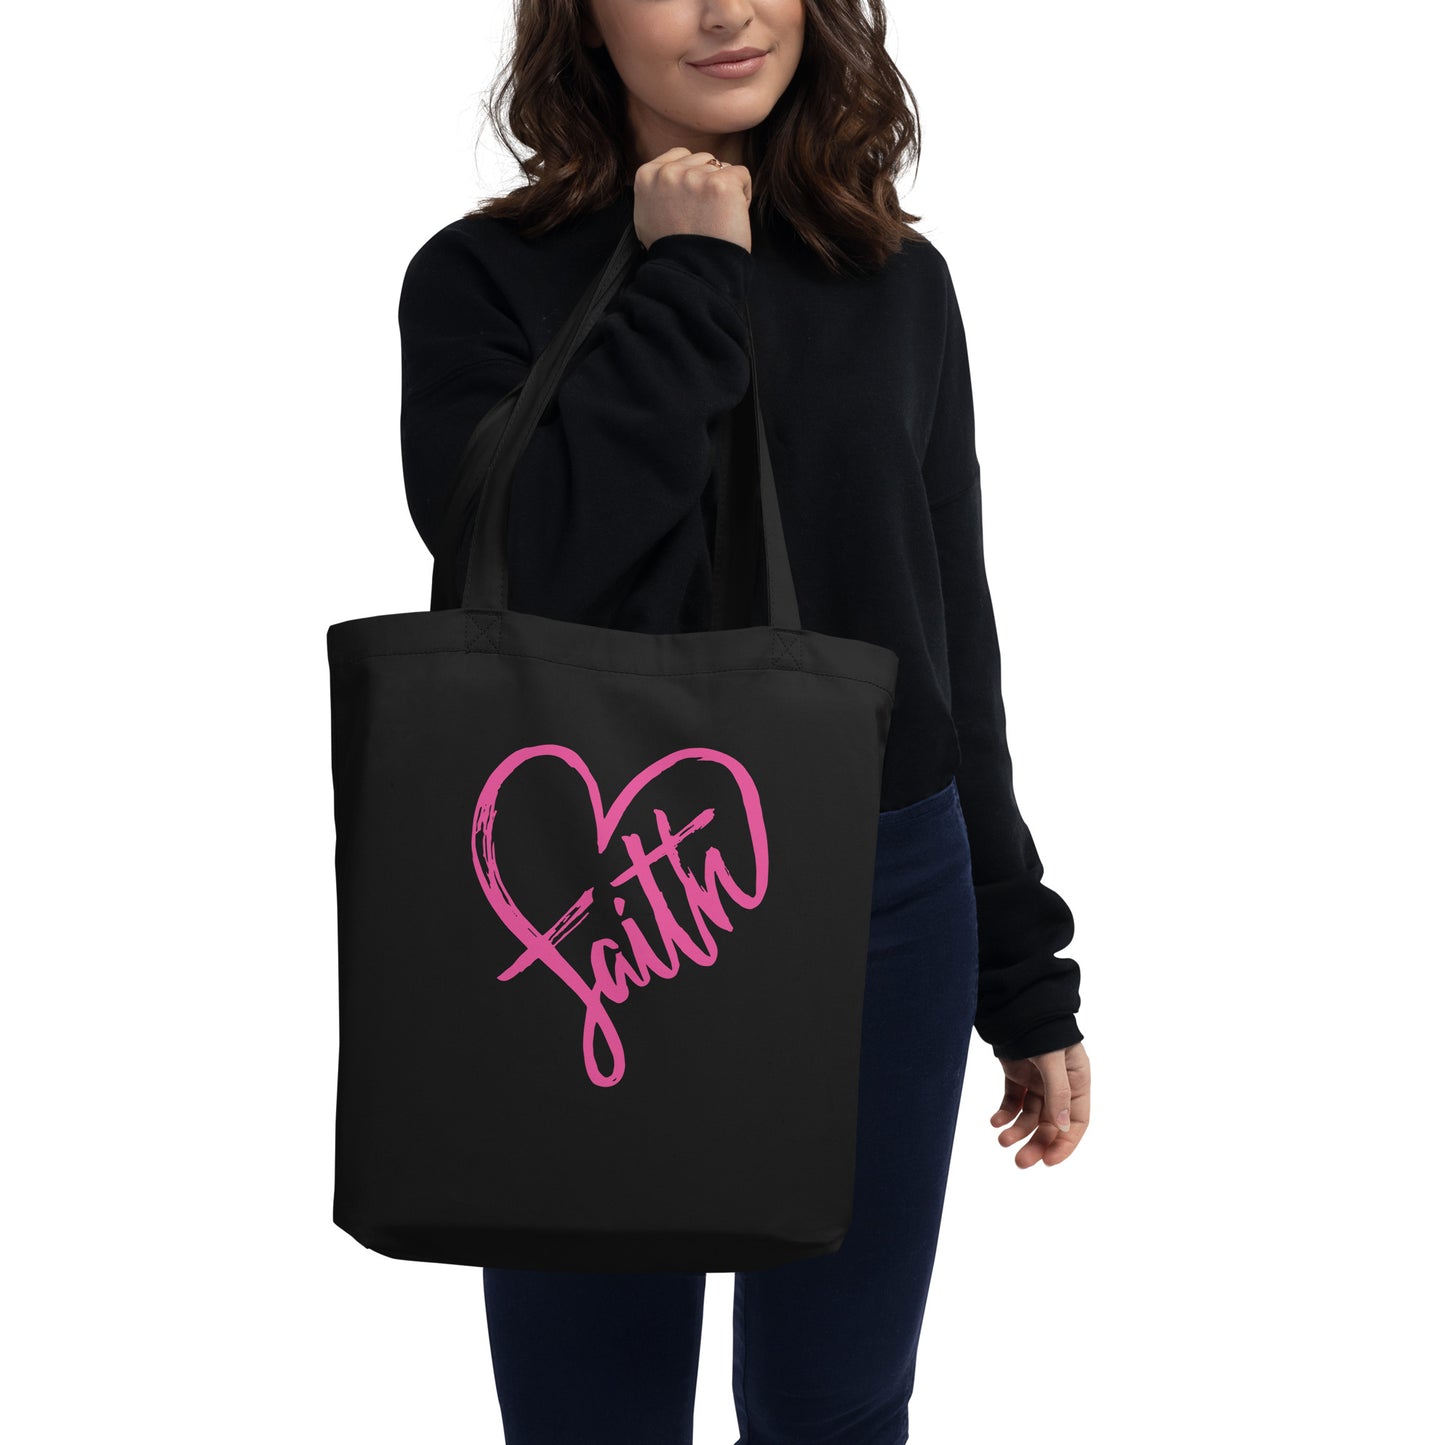 Faith Eco Tote Bag